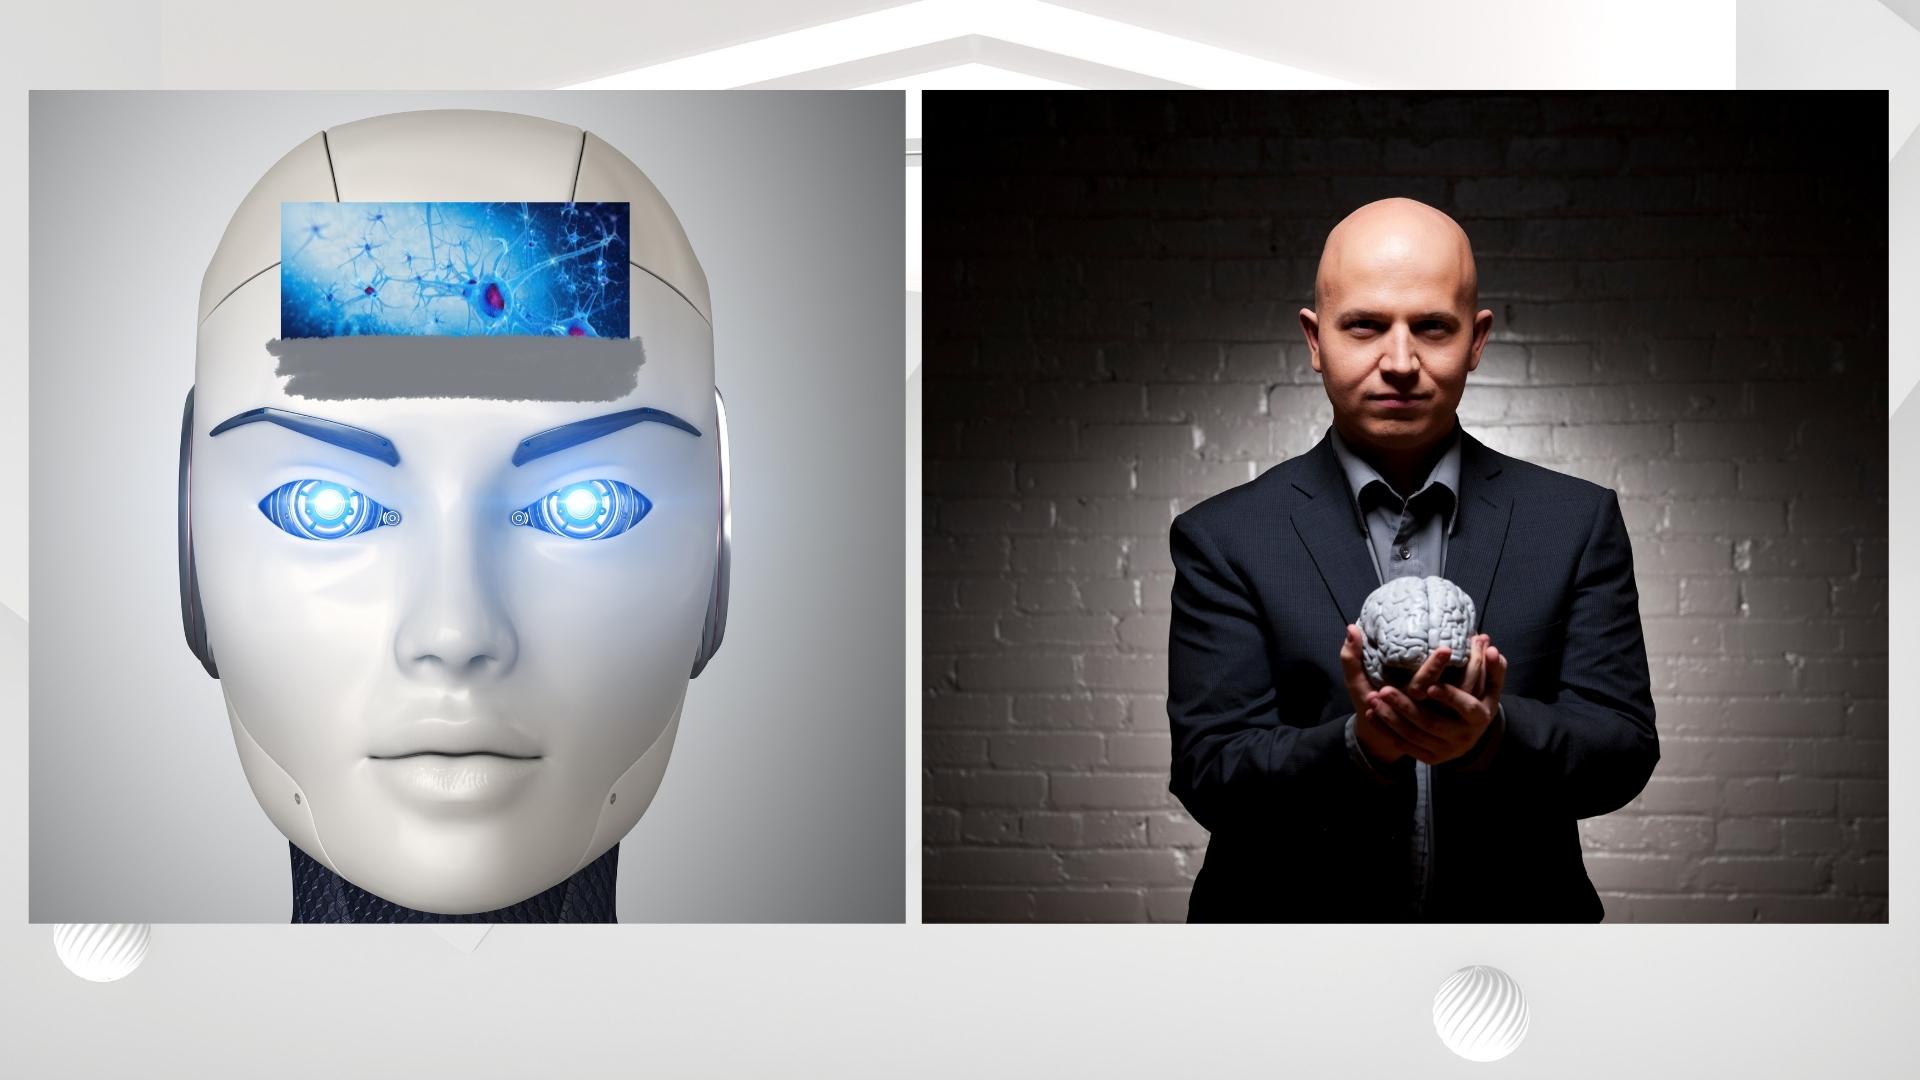 AI will reach human intelligence, not imitate it